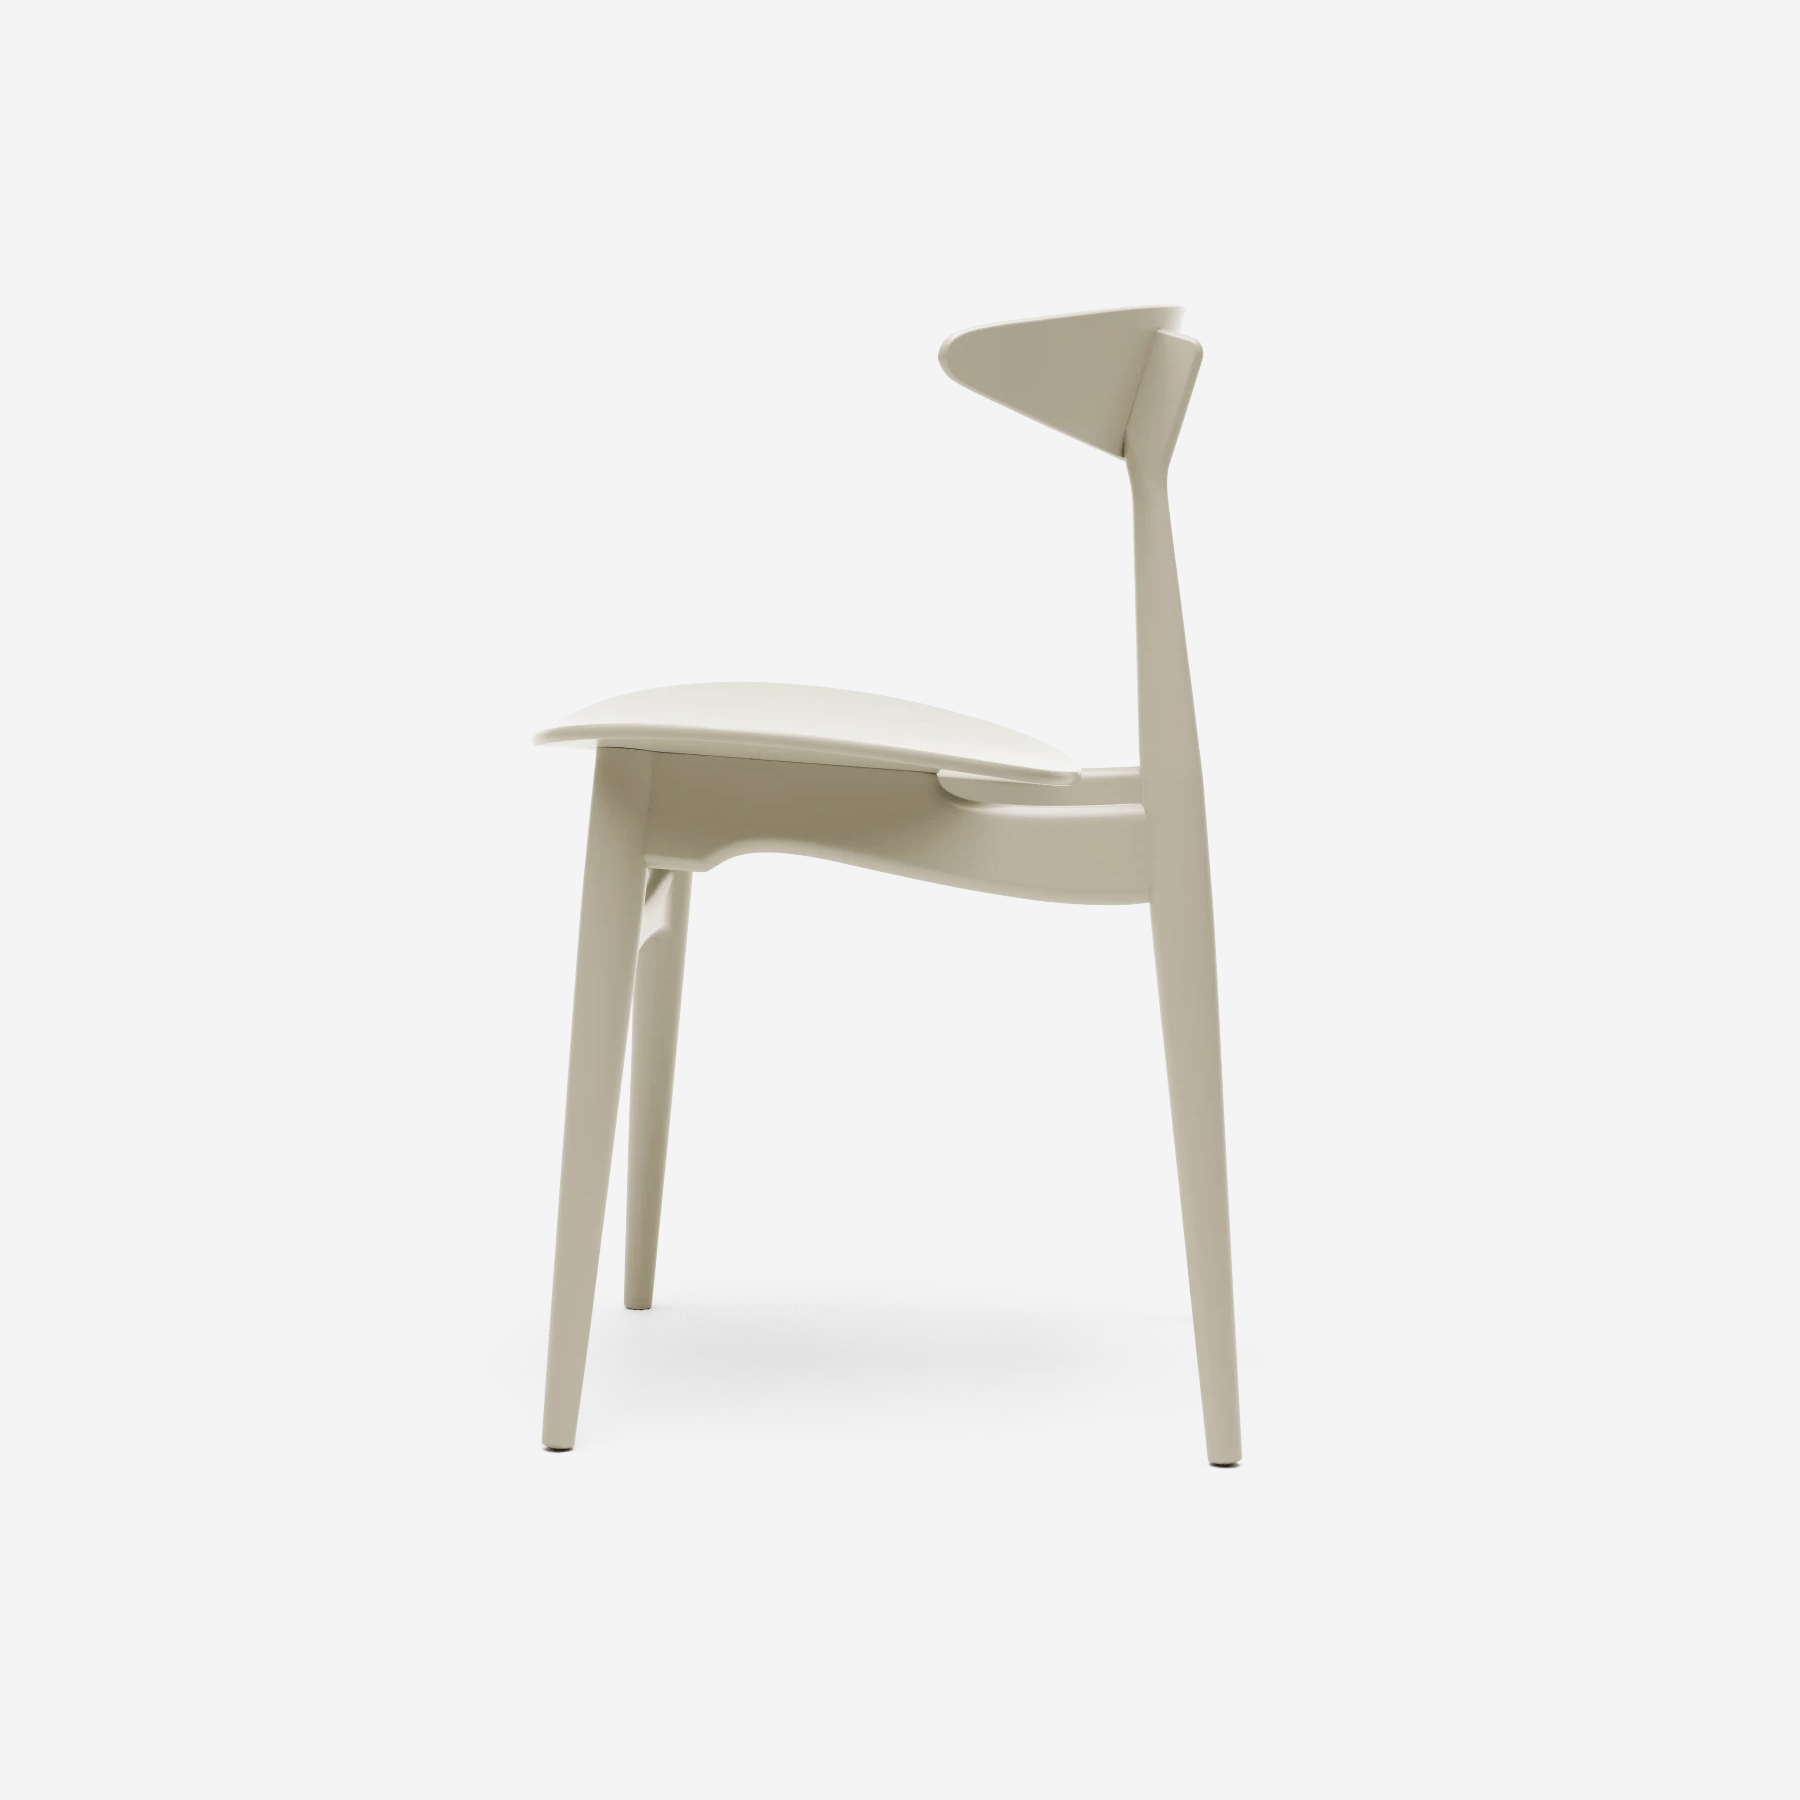 CH33T Chair, beech natural white - Moleta Munro Limited